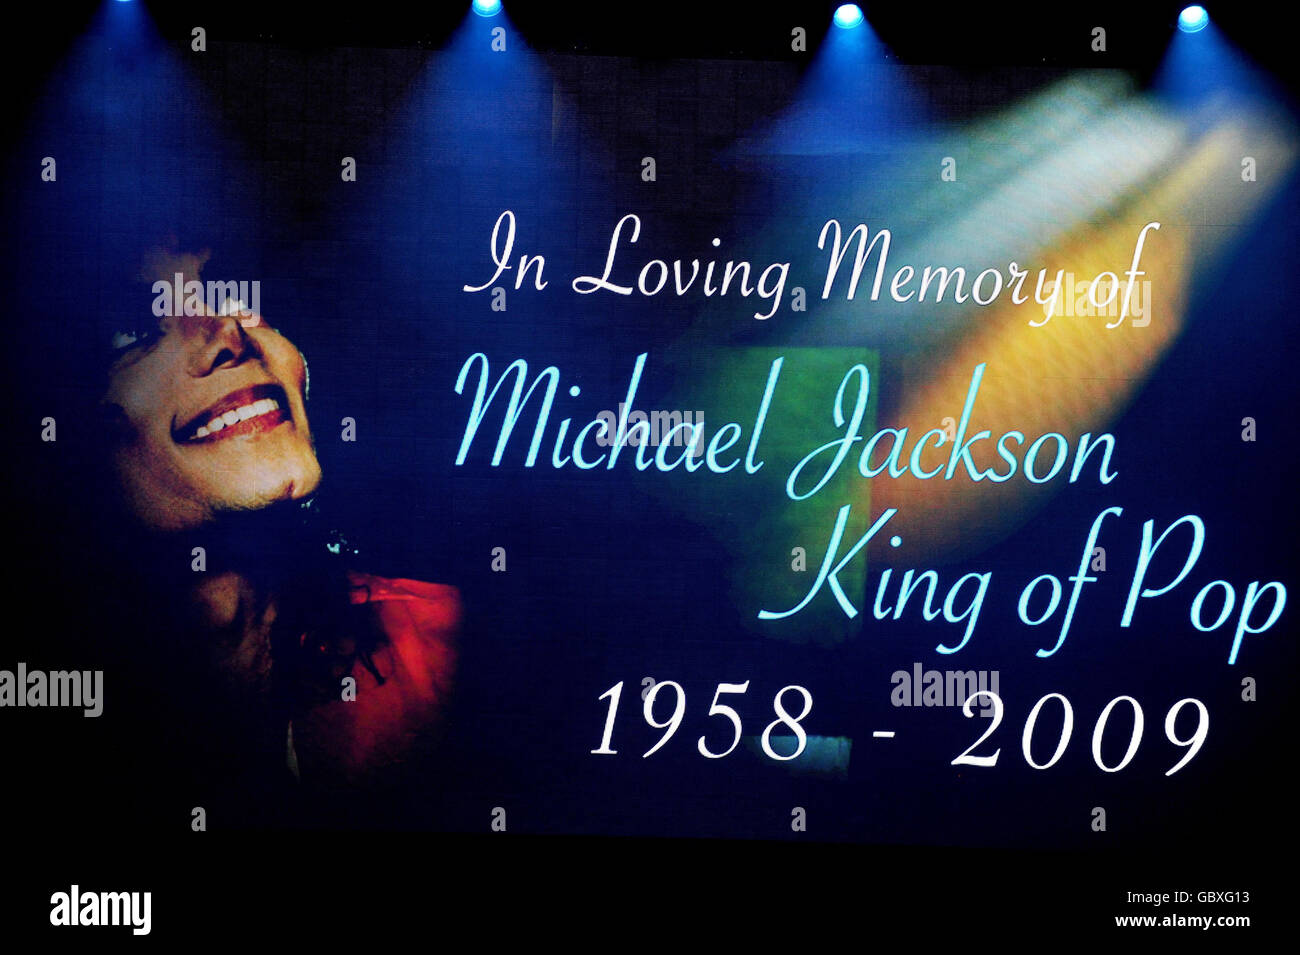 Michael Jackson Memorial Service.Un écran sur scène lors d'un service commémoratif pour Michael Jackson au Staples Center de Los Angeles. Banque D'Images